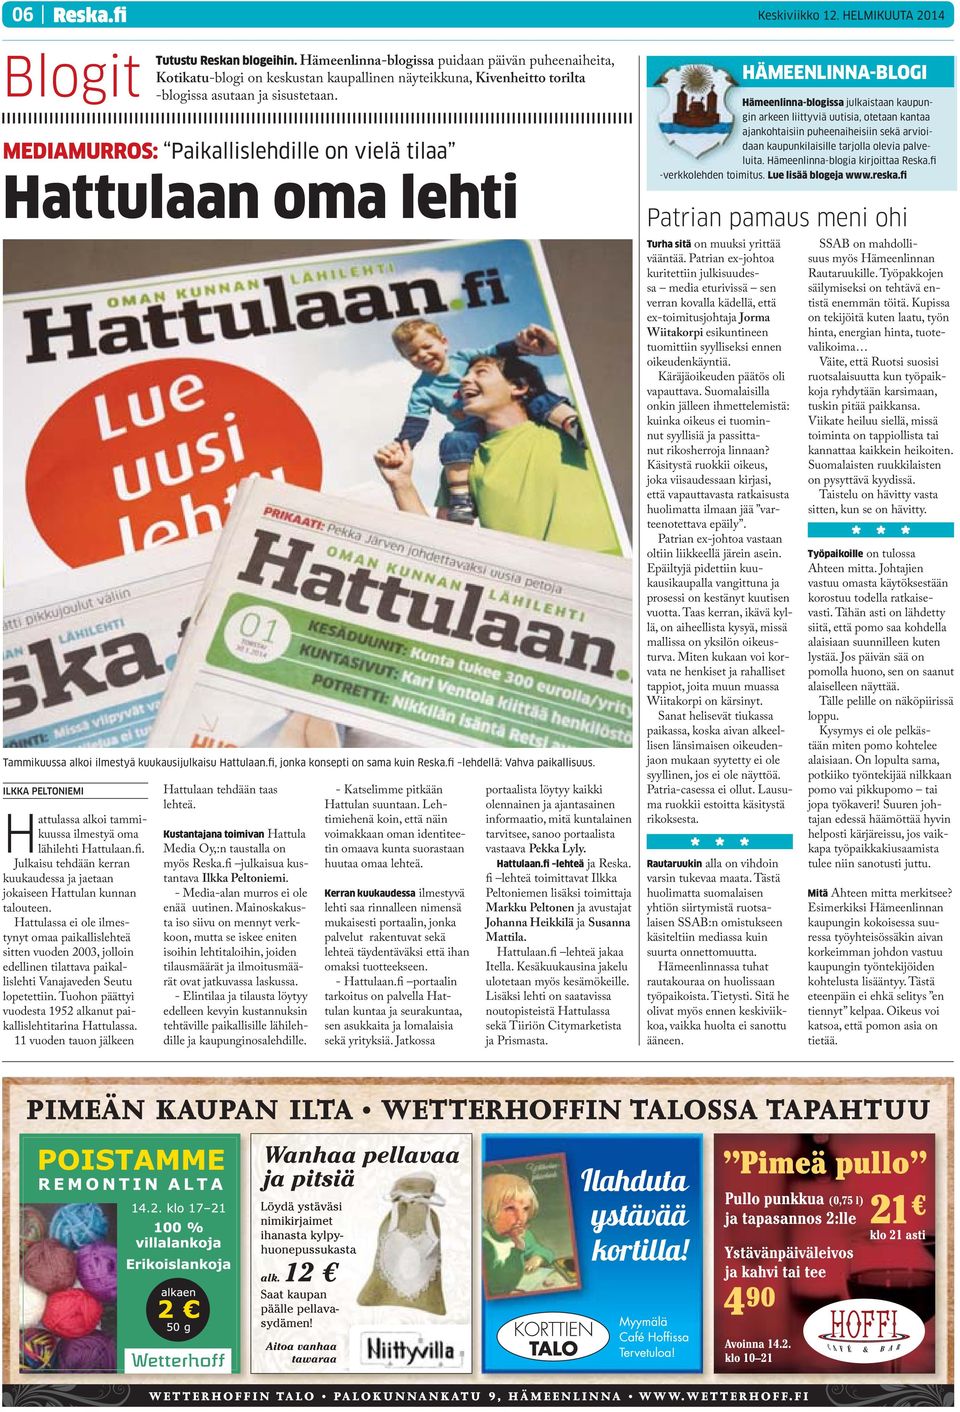 Tuohon päättyi vuodesta 1952 alkanut paikallislehtitarina Hattulassa. 11 vuoden tauon jälkeen Tutustu Reskan blogeihin.